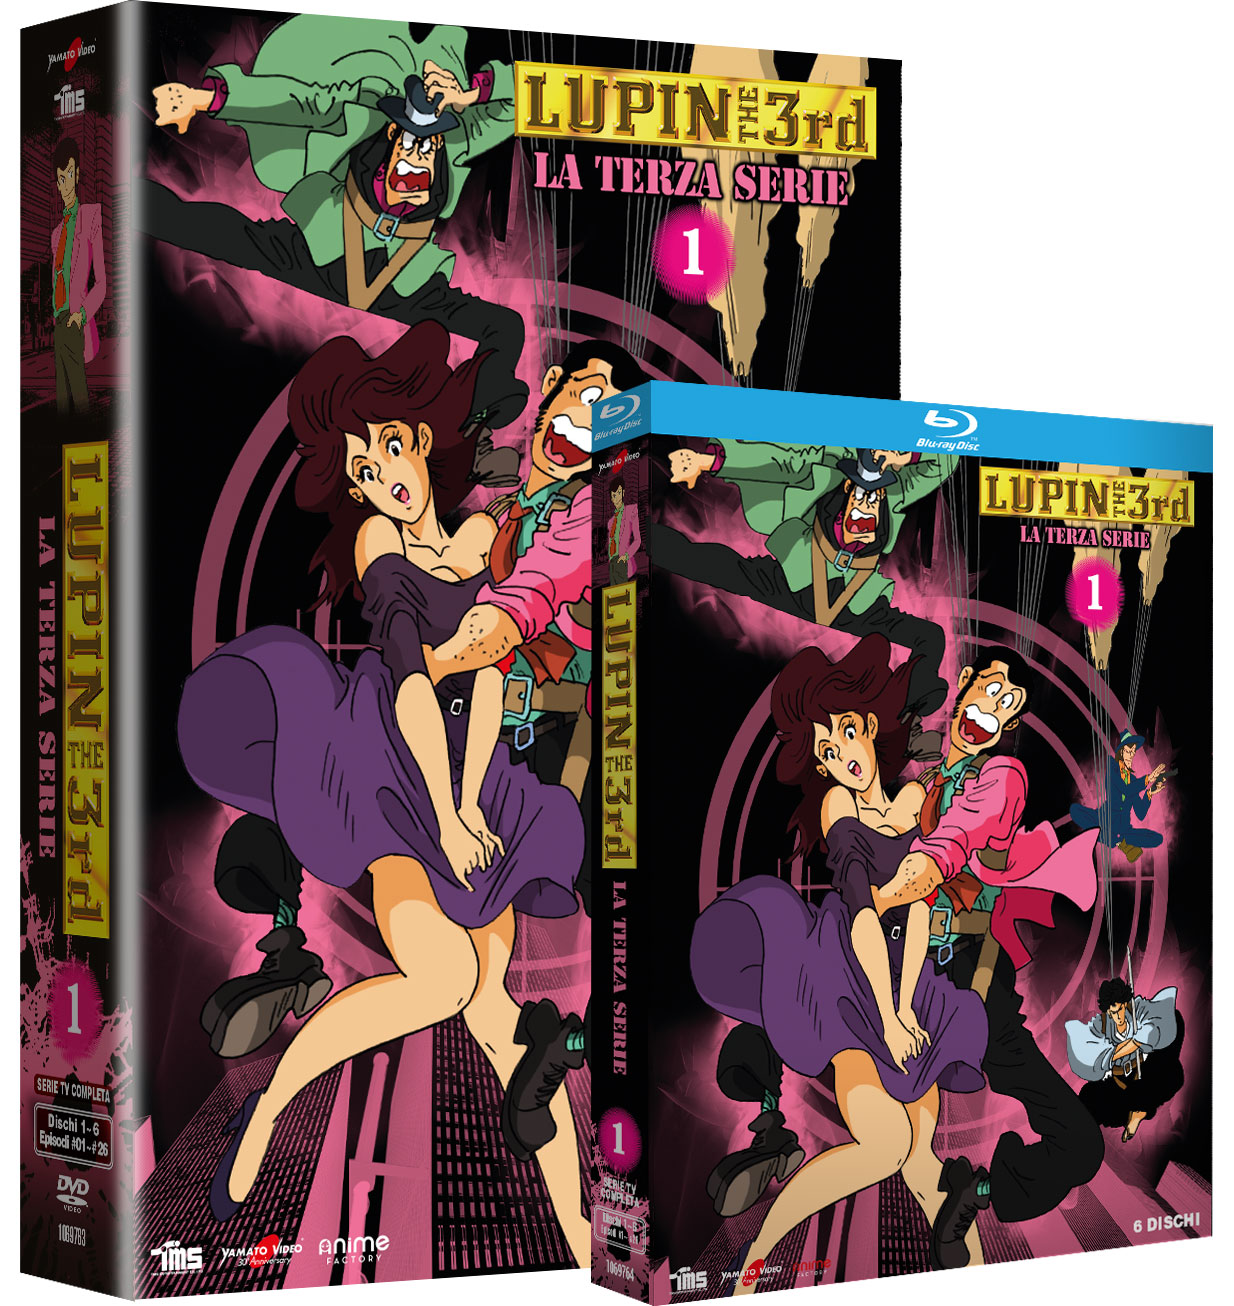 Lupin III - La Terza Serie Vol. 1